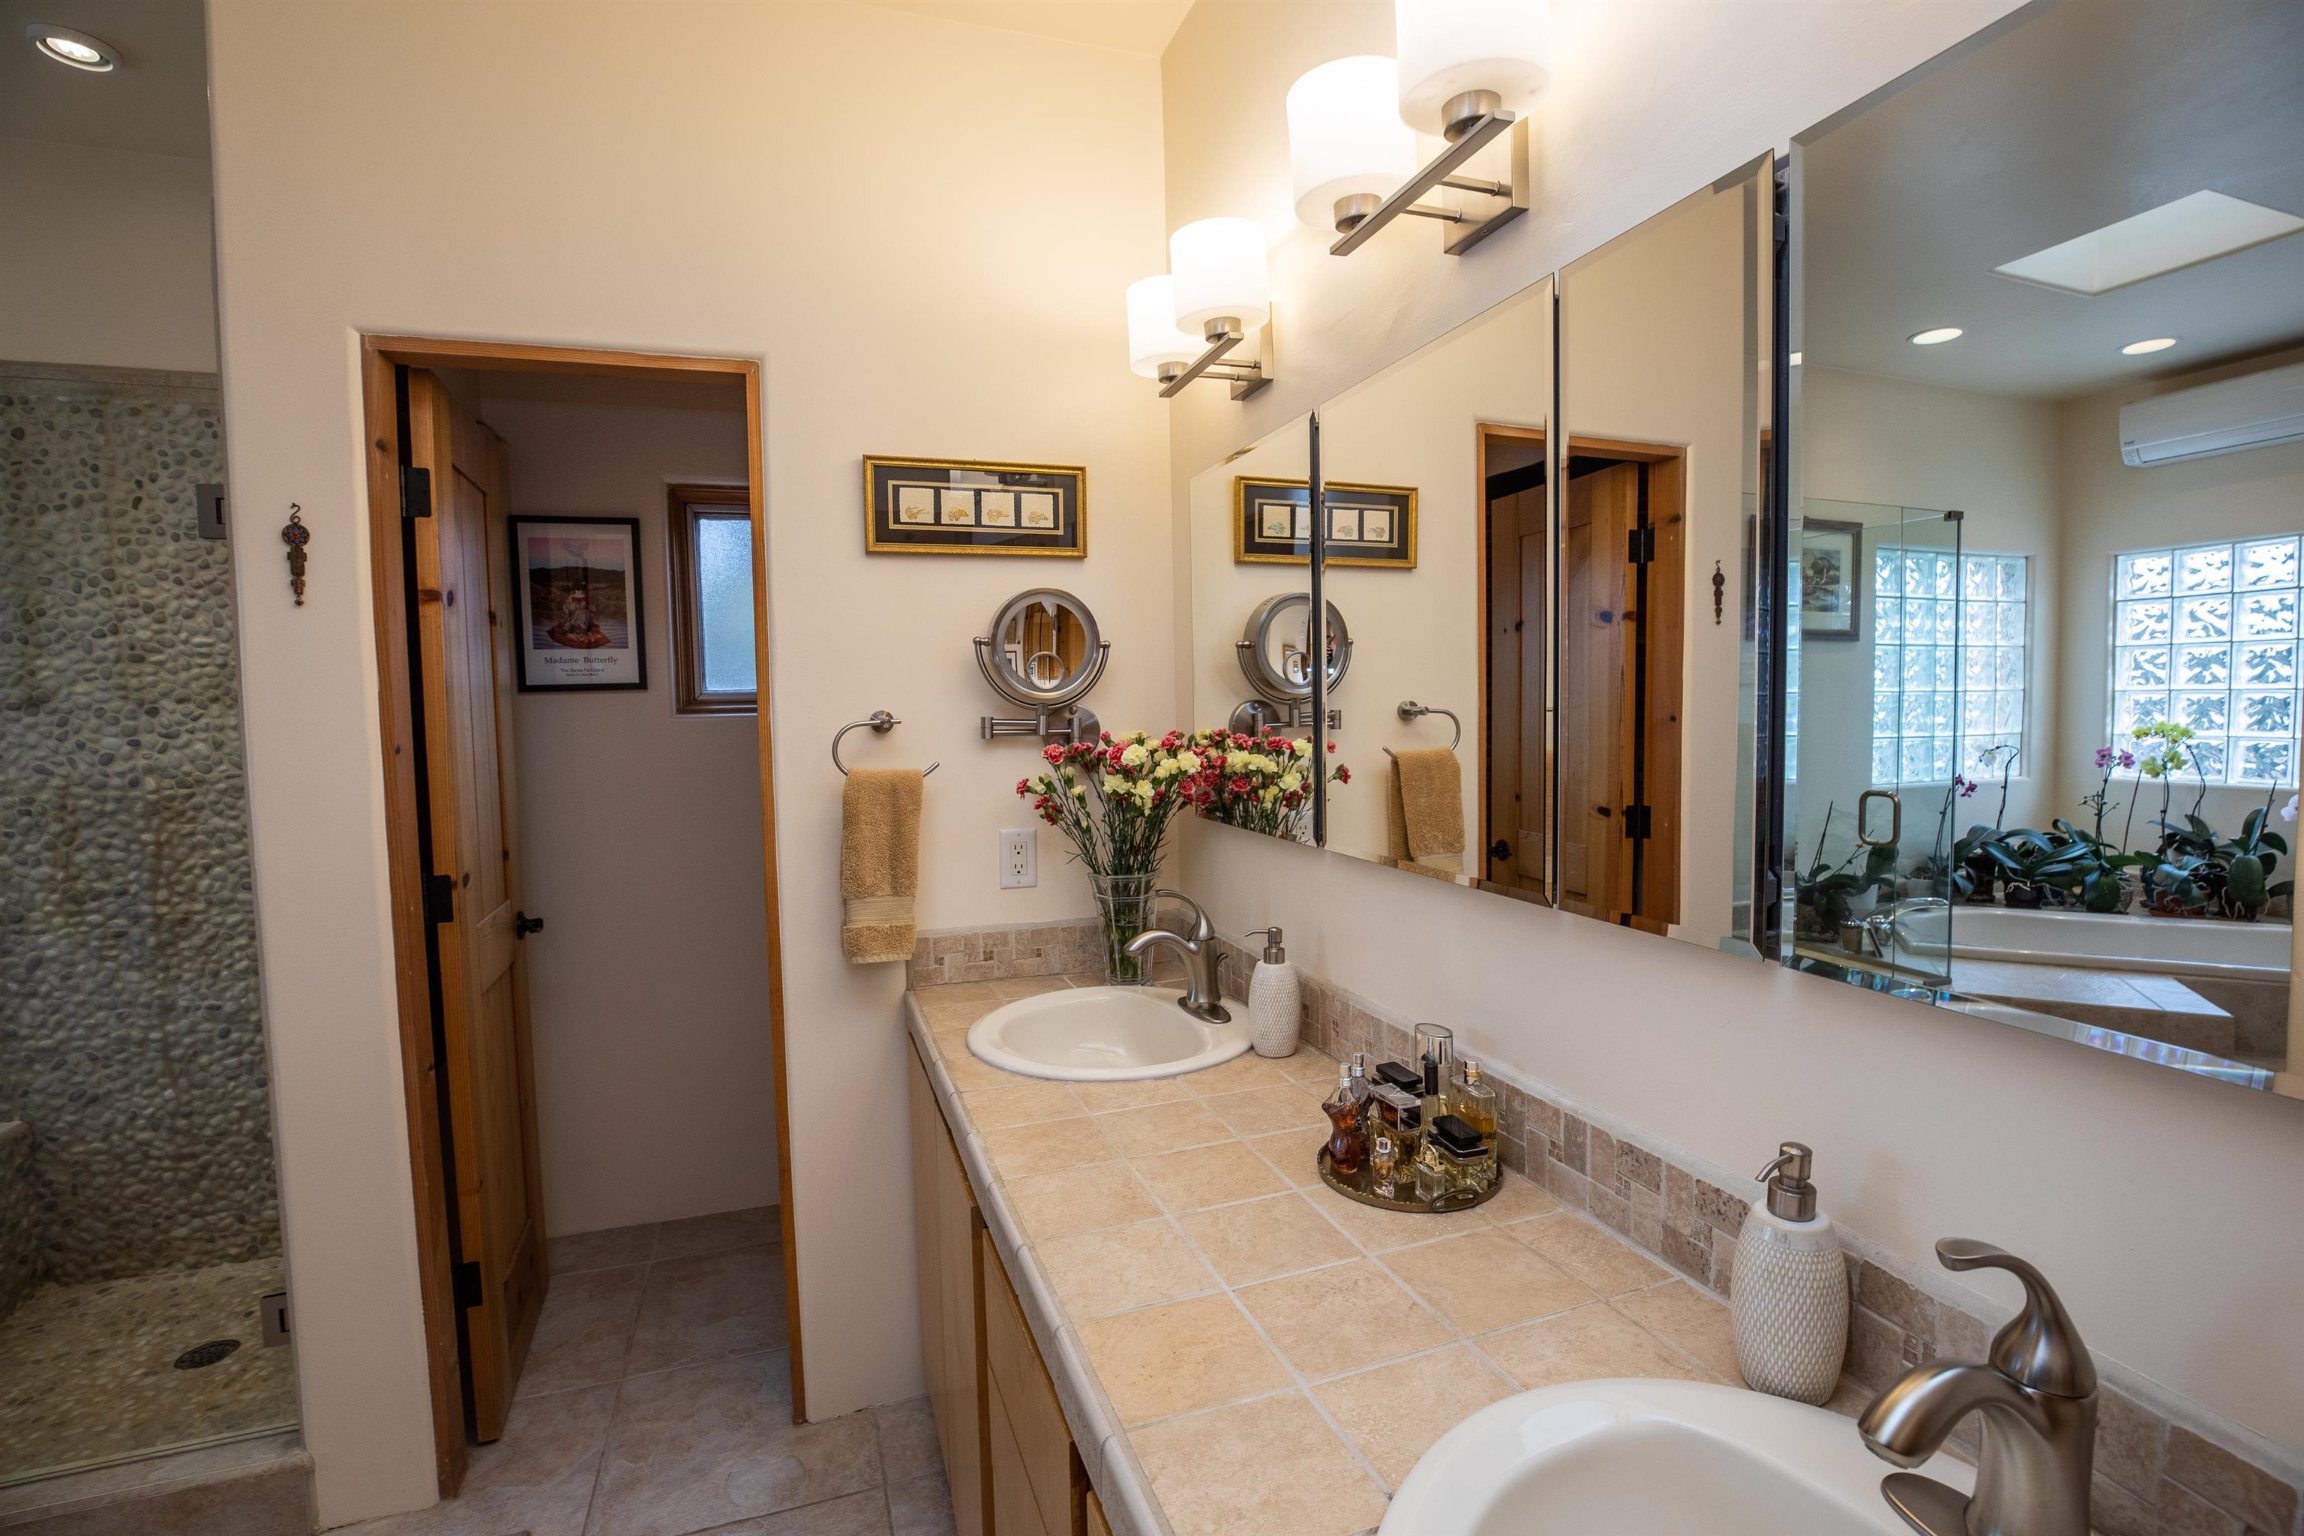 844 Camino Vistas Encantada, Santa Fe, New Mexico 87507, 3 Bedrooms Bedrooms, ,3 BathroomsBathrooms,Residential,For Sale,844 Camino Vistas Encantada,202201700